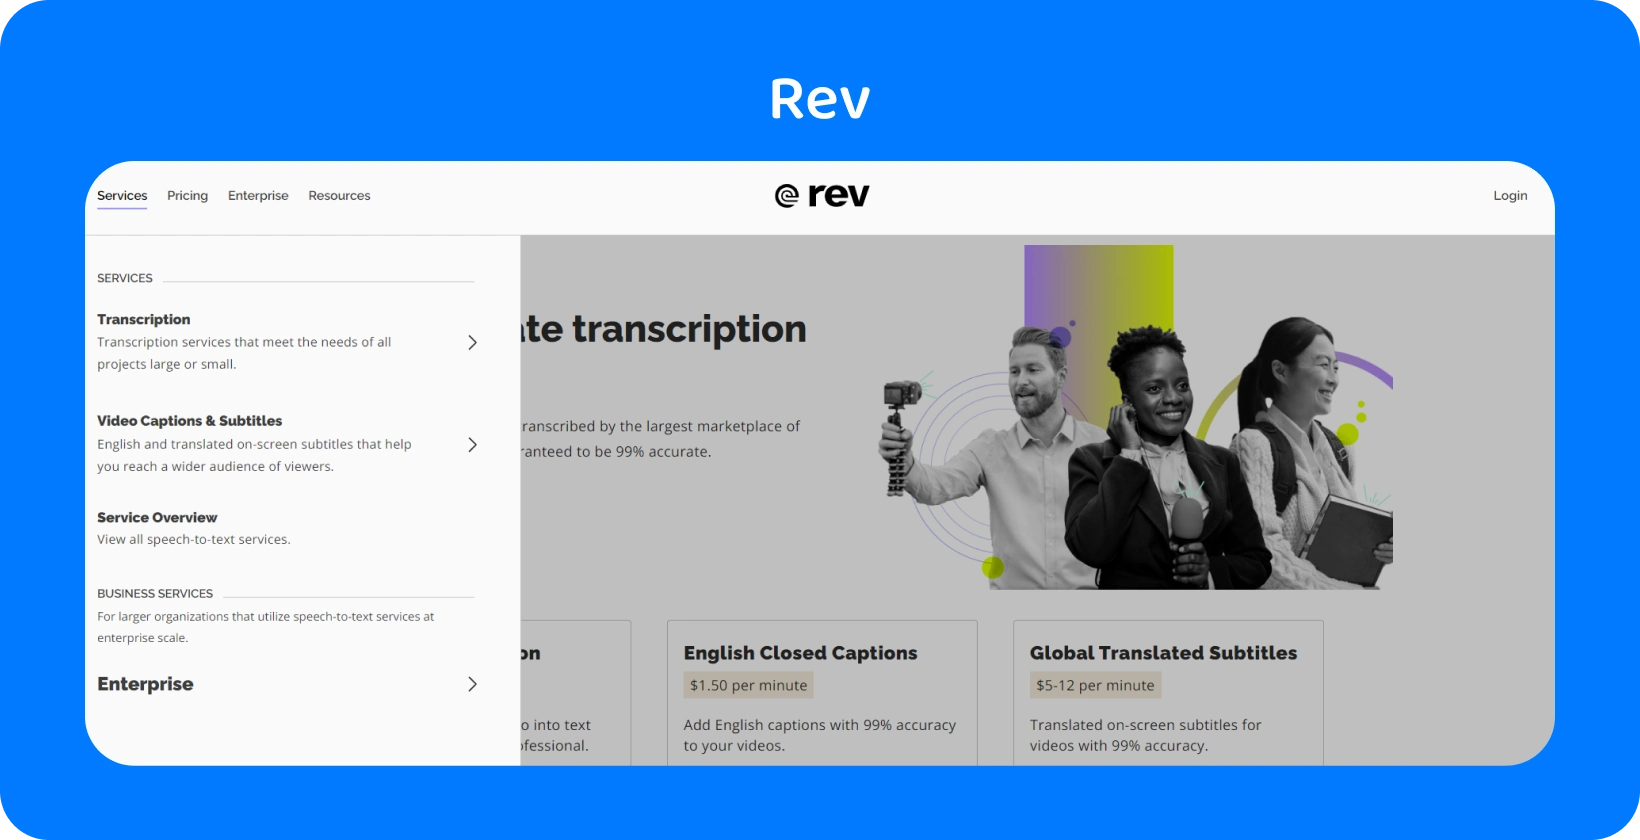 На домашней странице Rev представлены услуги транскрипции для быстрого и точного преобразования аудио в текст для профессионалов.